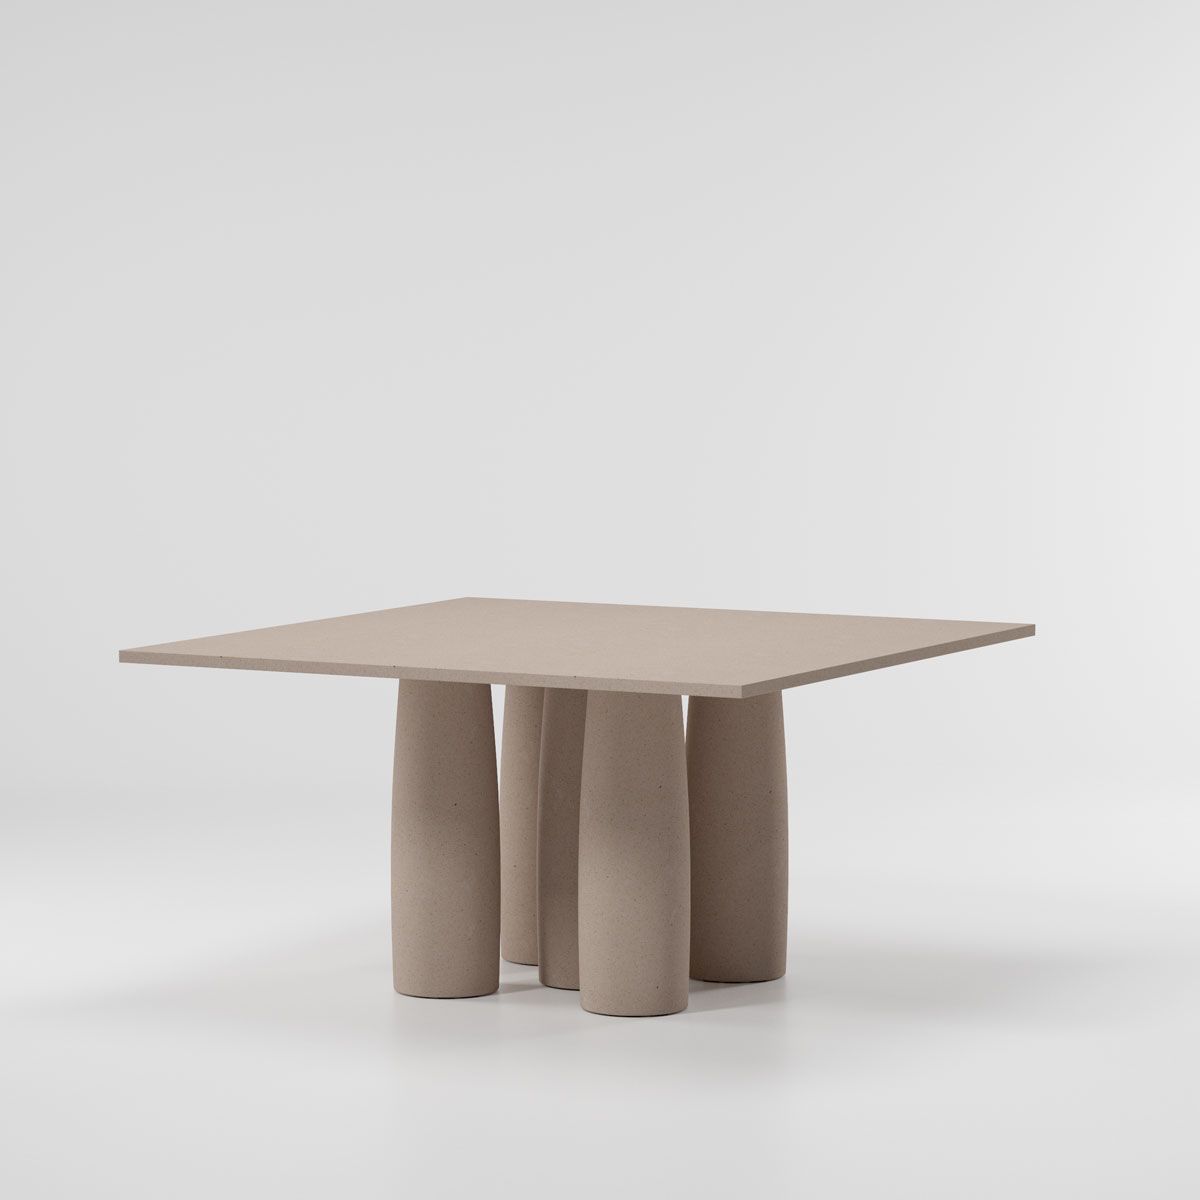 Il Colonnato Minera stone dining table 140 x 140 / 8 Guest